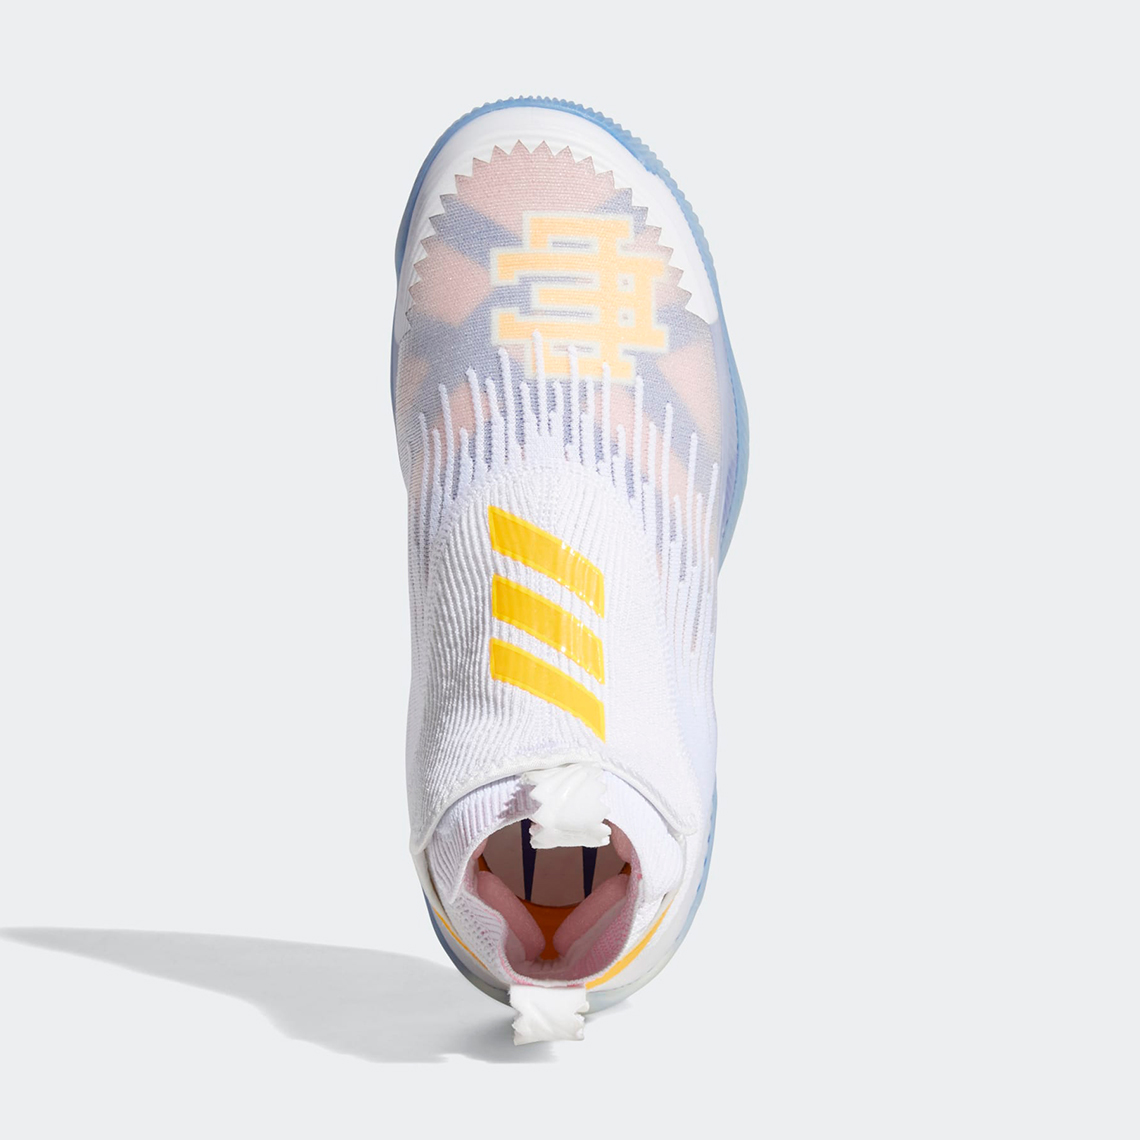 Eric Emanuel adidas N3XT L3V3L Exhibit A Release Date | SneakerNews.com